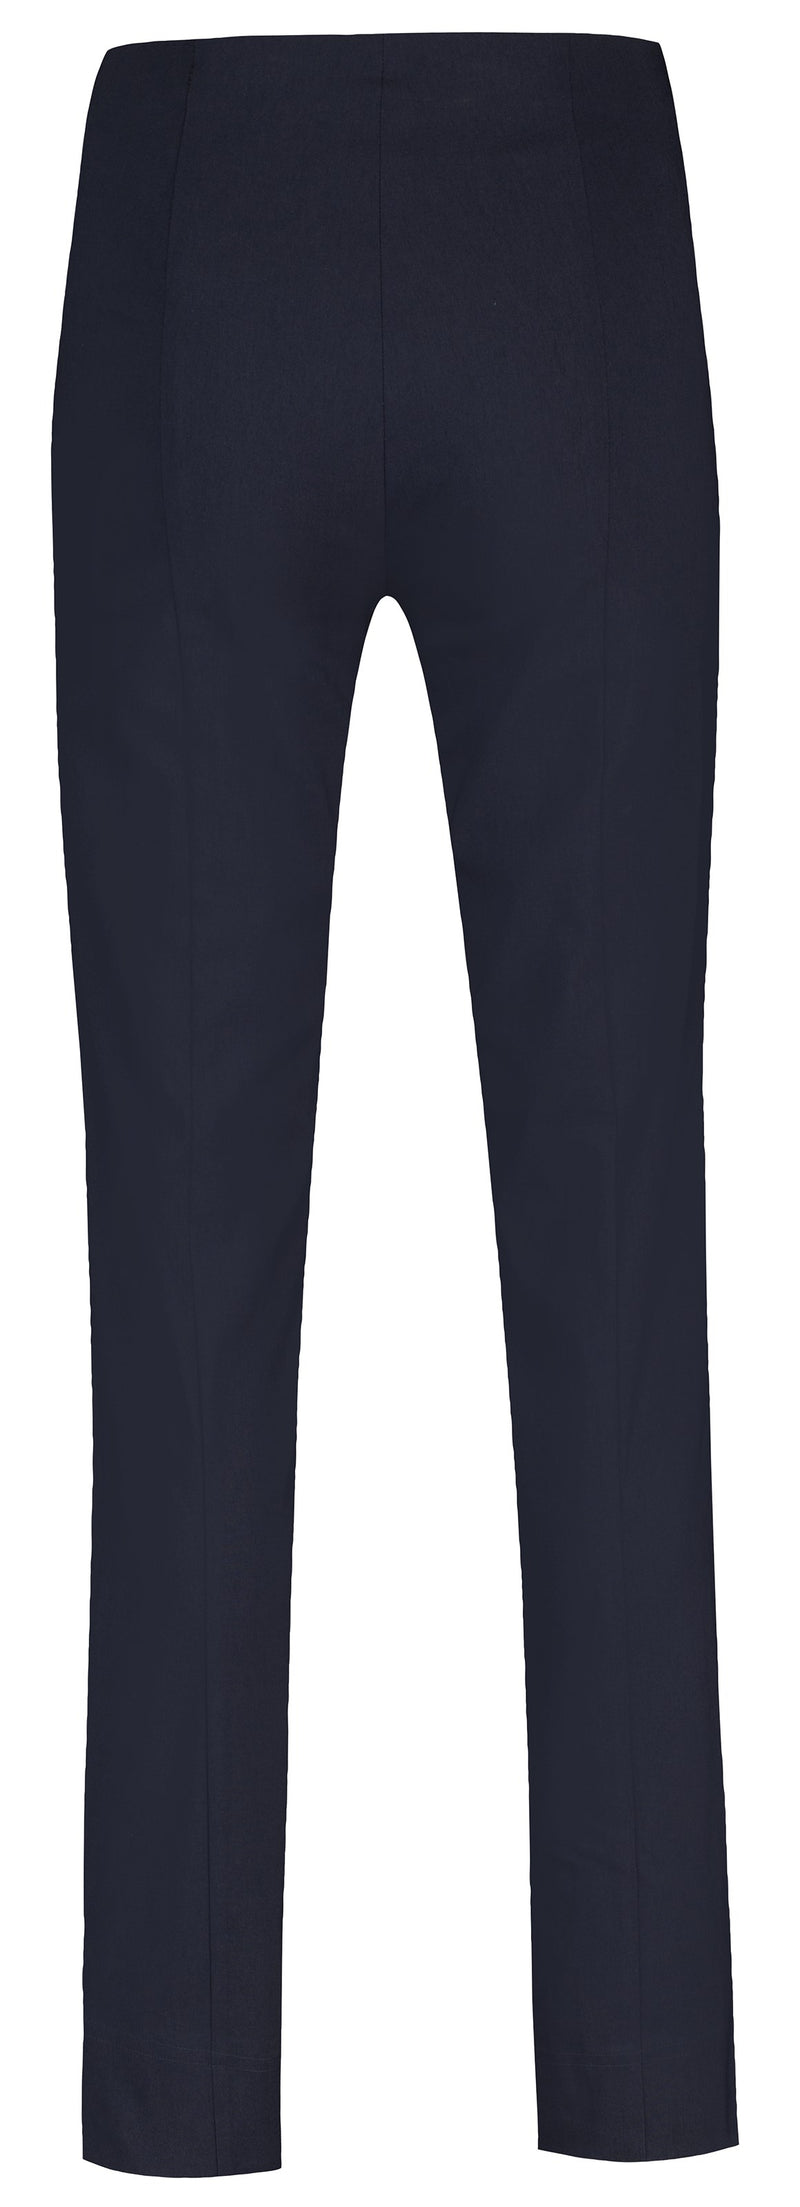 Marie Full Length Trousers - Navy